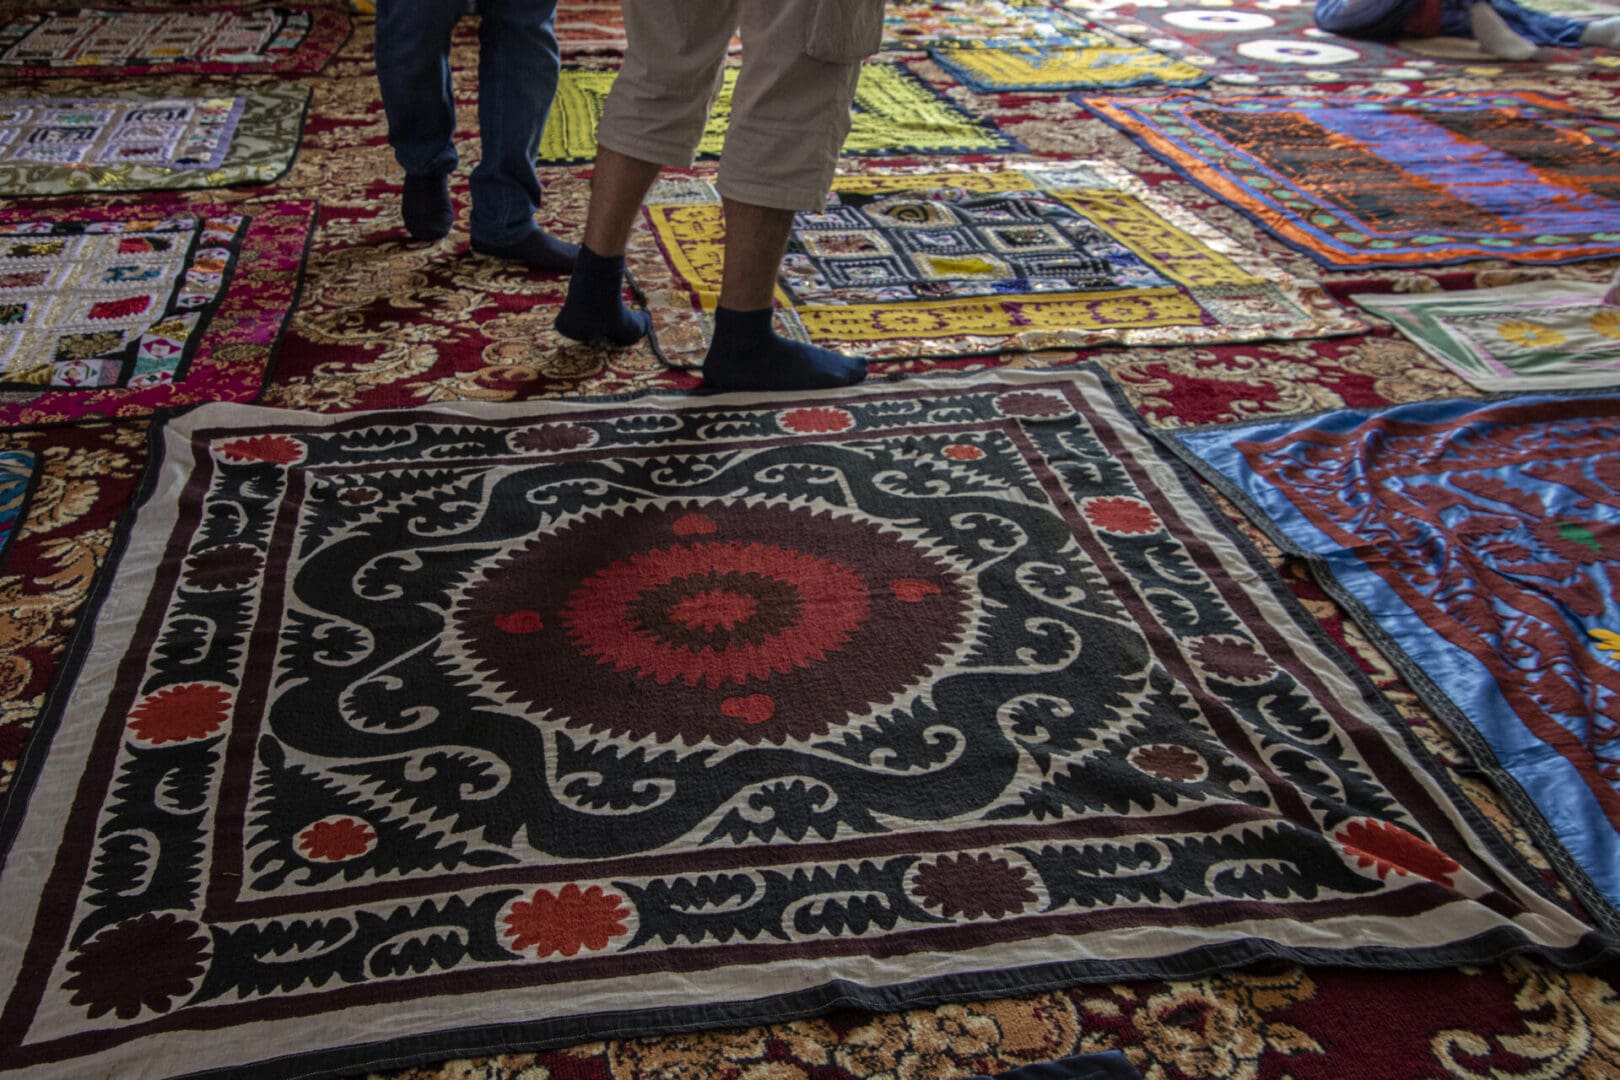 A rug on the floor.